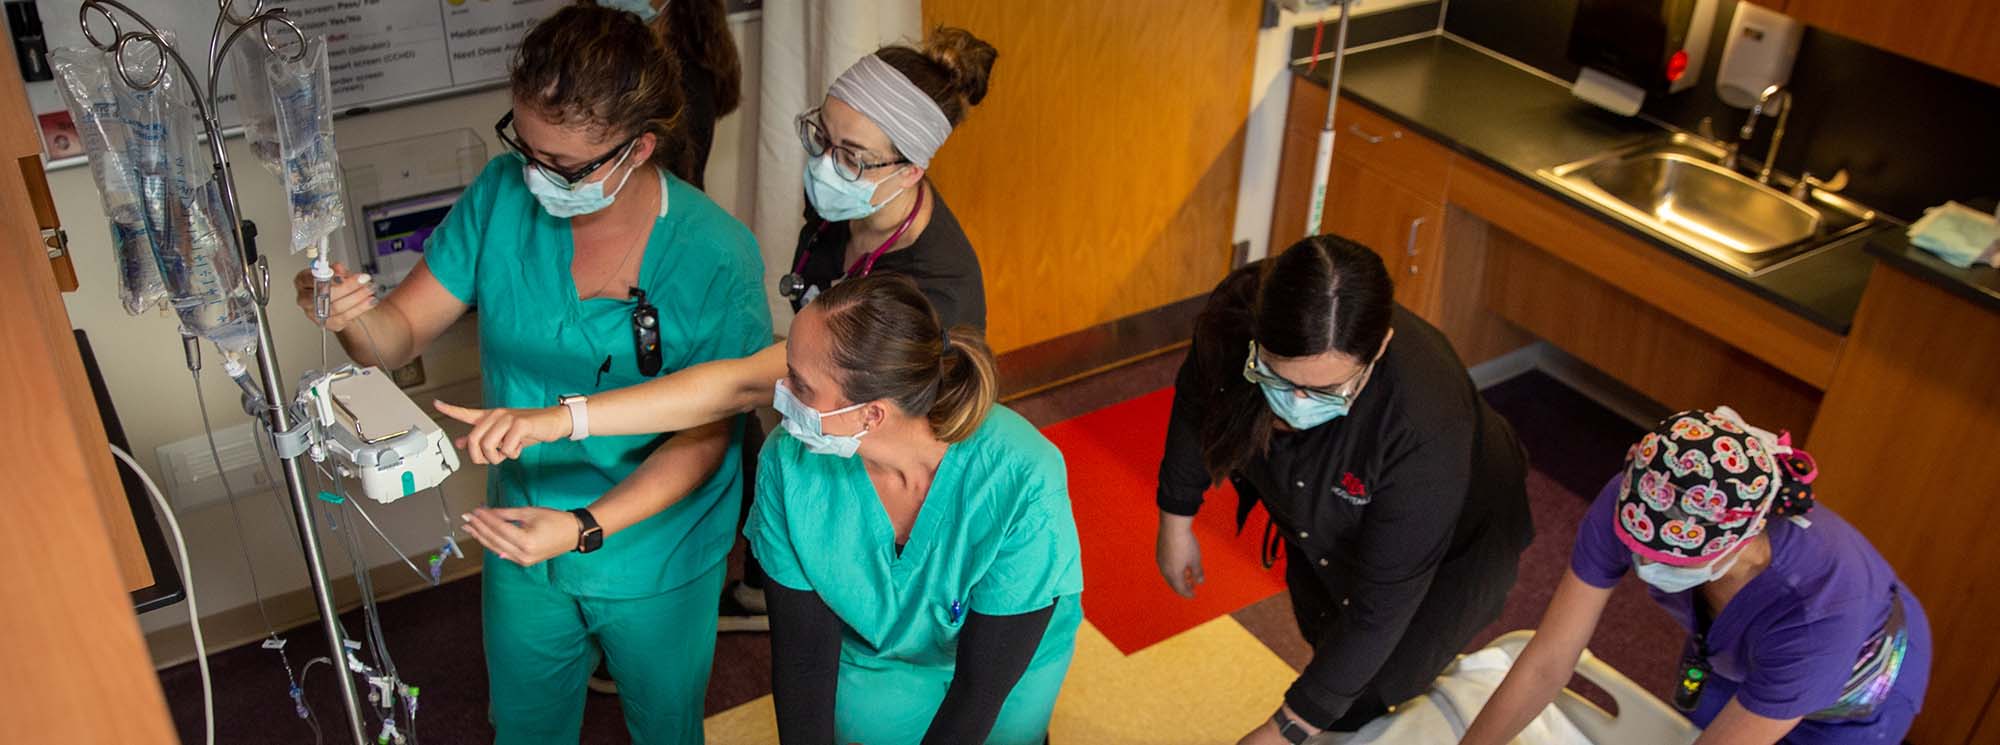 Estudiantes de enfermería trabajando juntos en un paciente